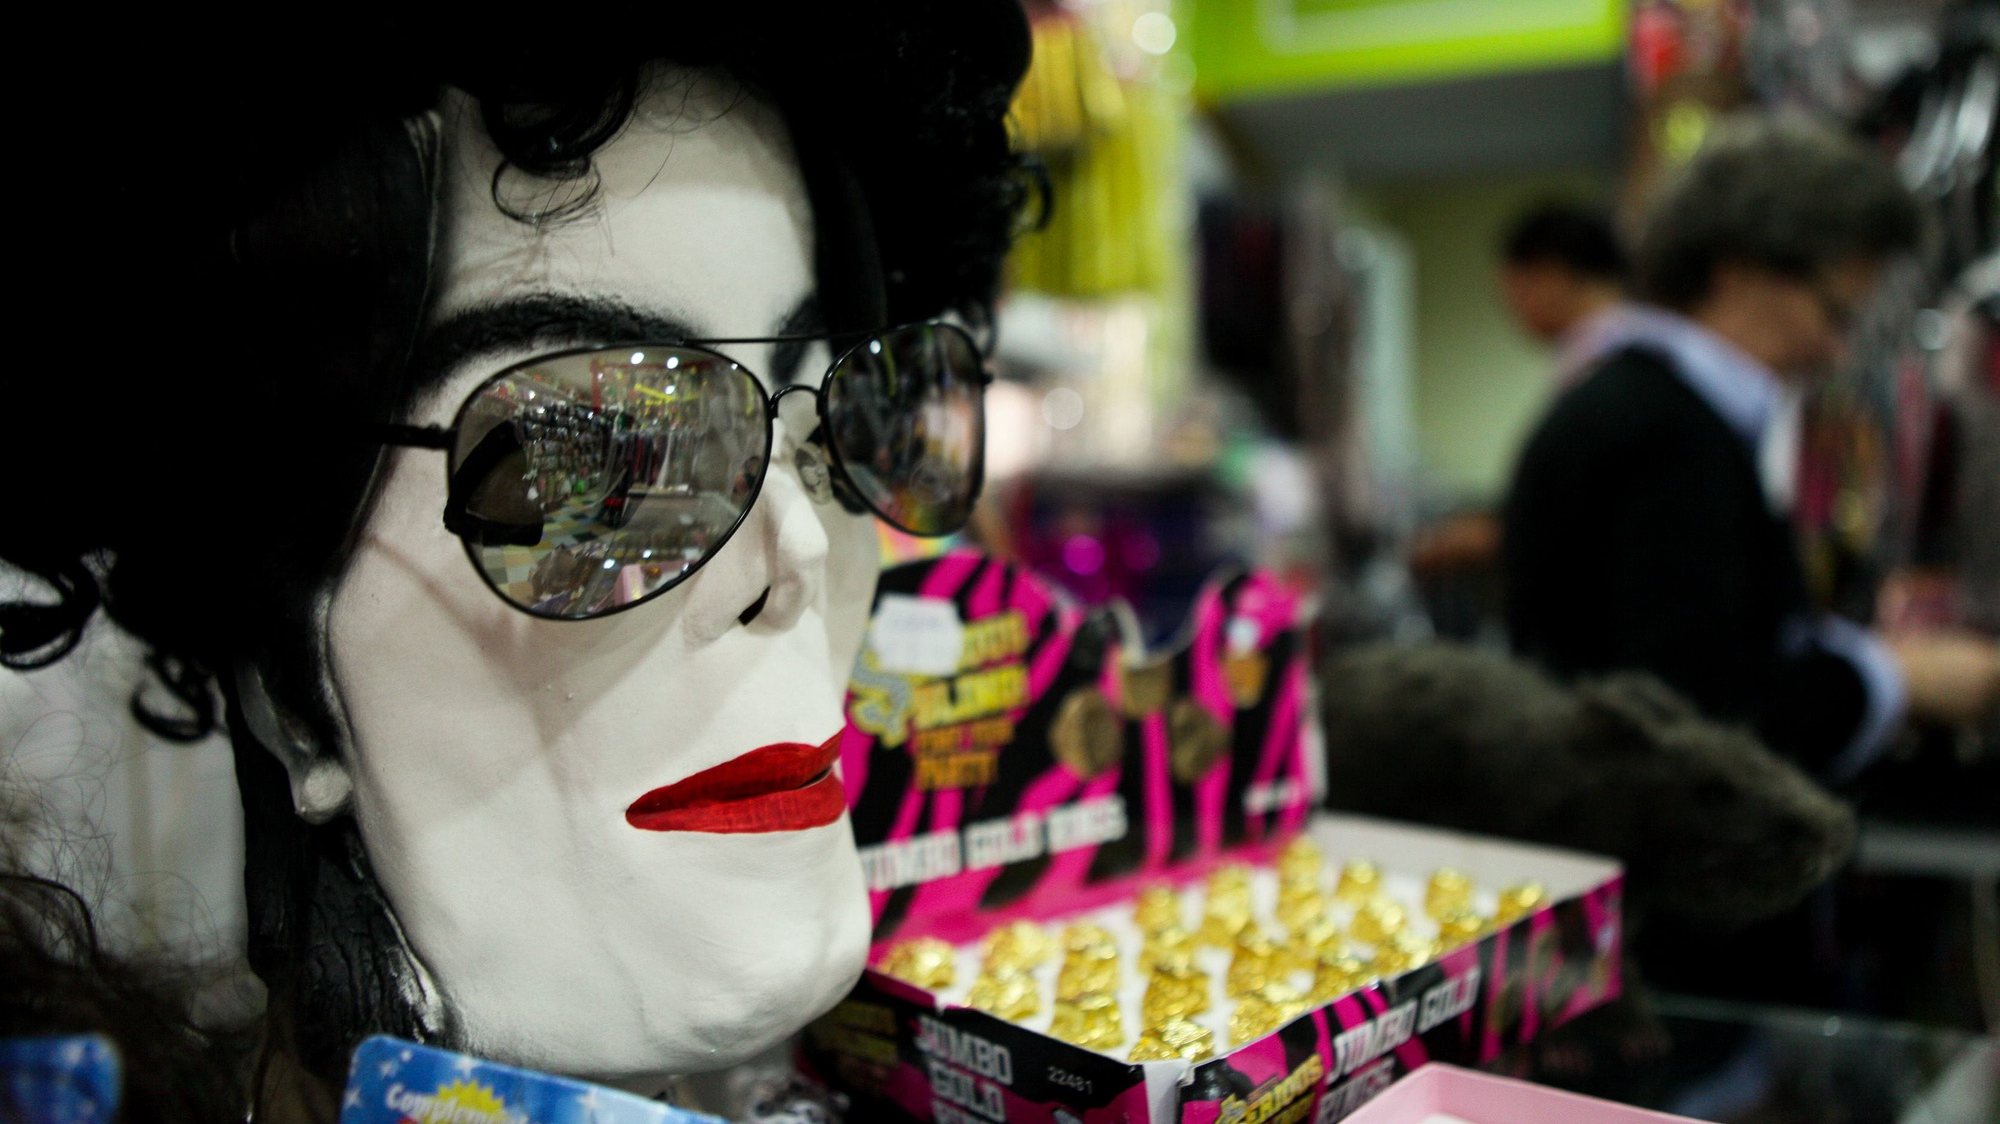 Uma máscara de Michael Jackson, uma dos muitos disfarces de Carnaval que se podem comprar na Casa Carnaval, a loja mais antiga de artigos de Carnaval de Lisboa com cerca de 122 anos, em Lisboa, 02 março de 2011. (ACOMPANHA TEXTO). MIGUEL A. LOPES / LUSA